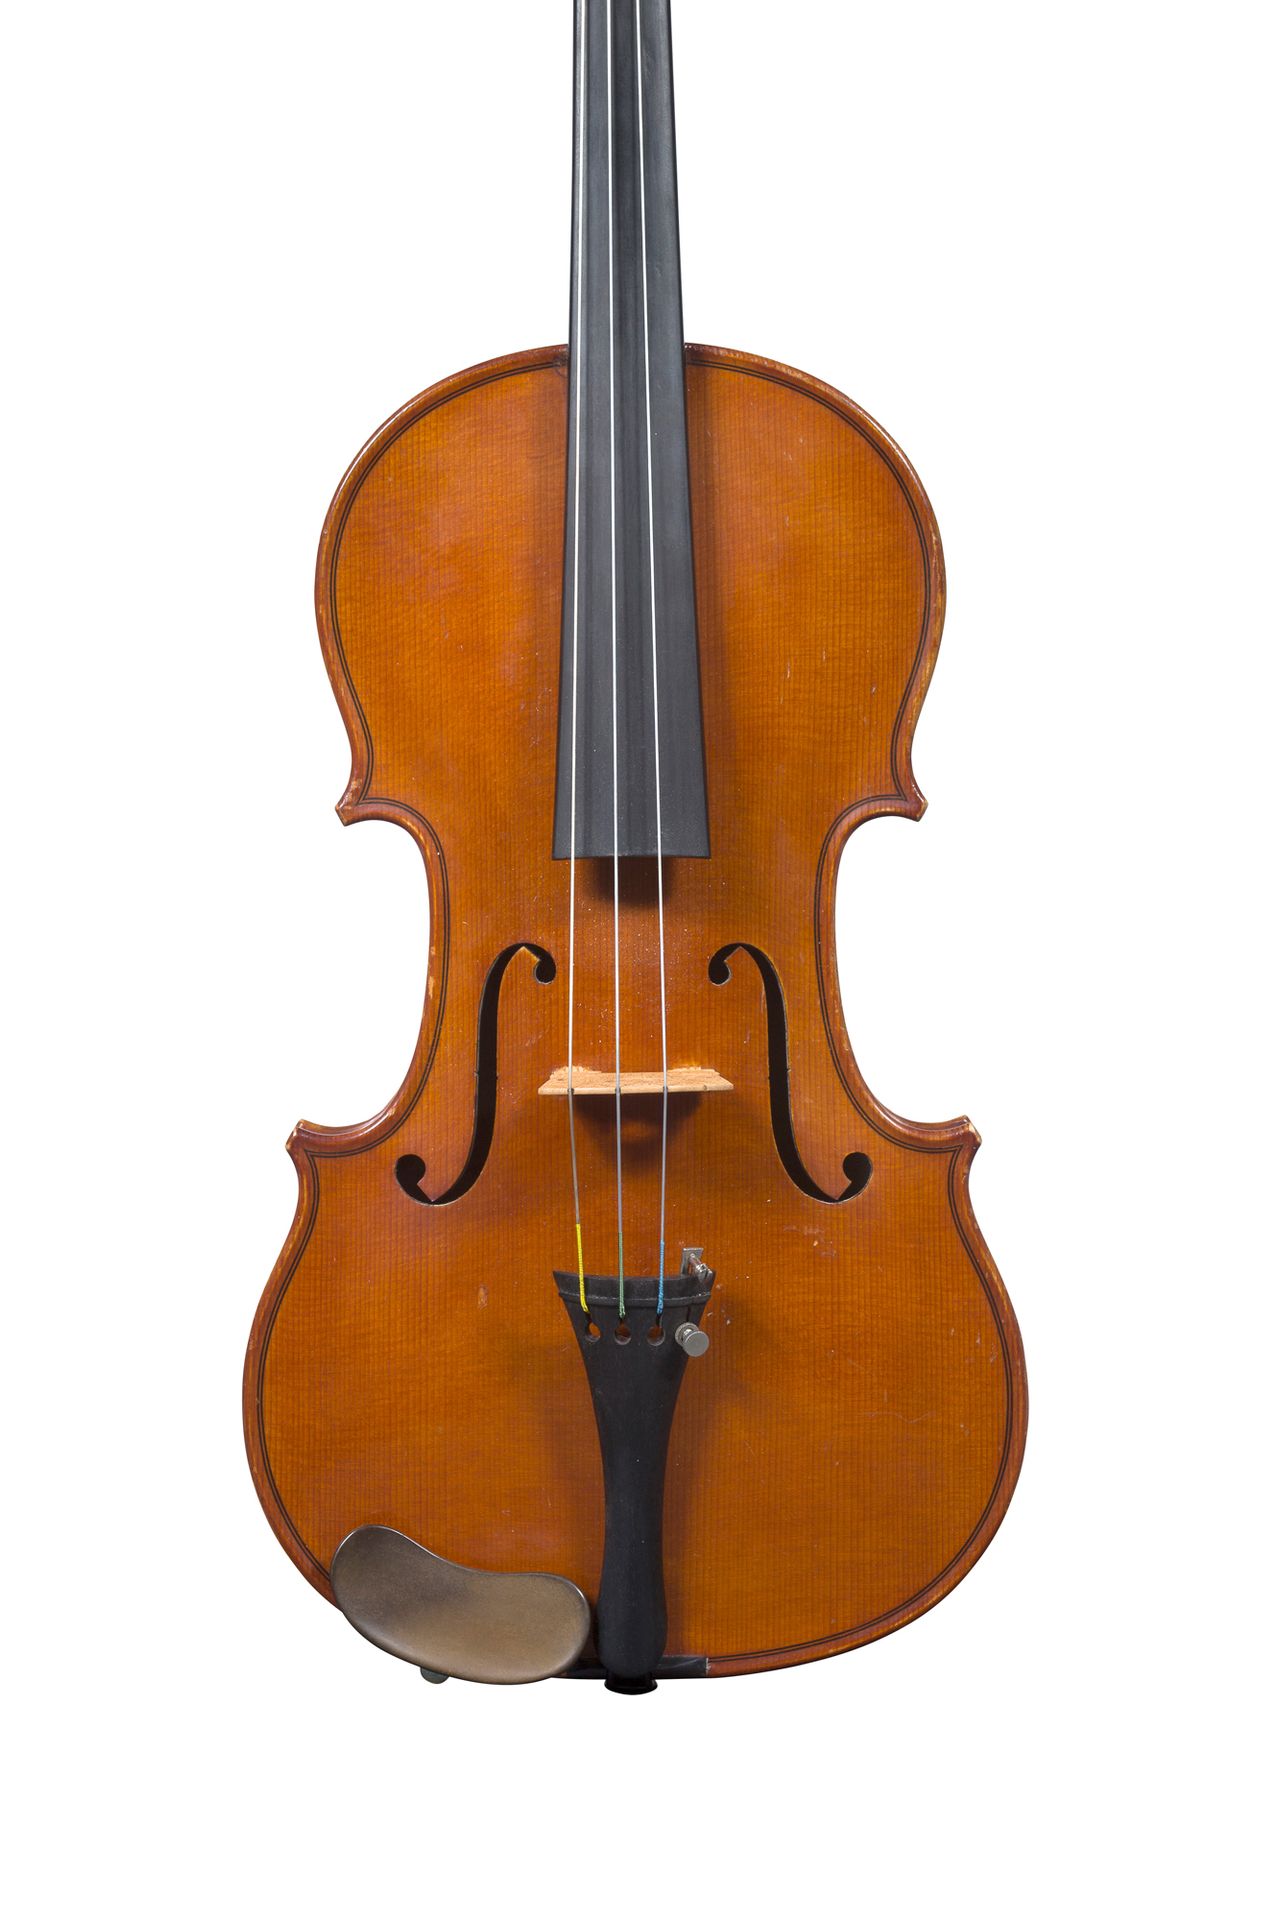 Null Violino fabbricato a Mirecourt intorno al 1930-40
Con un'etichetta apocrifa&hellip;